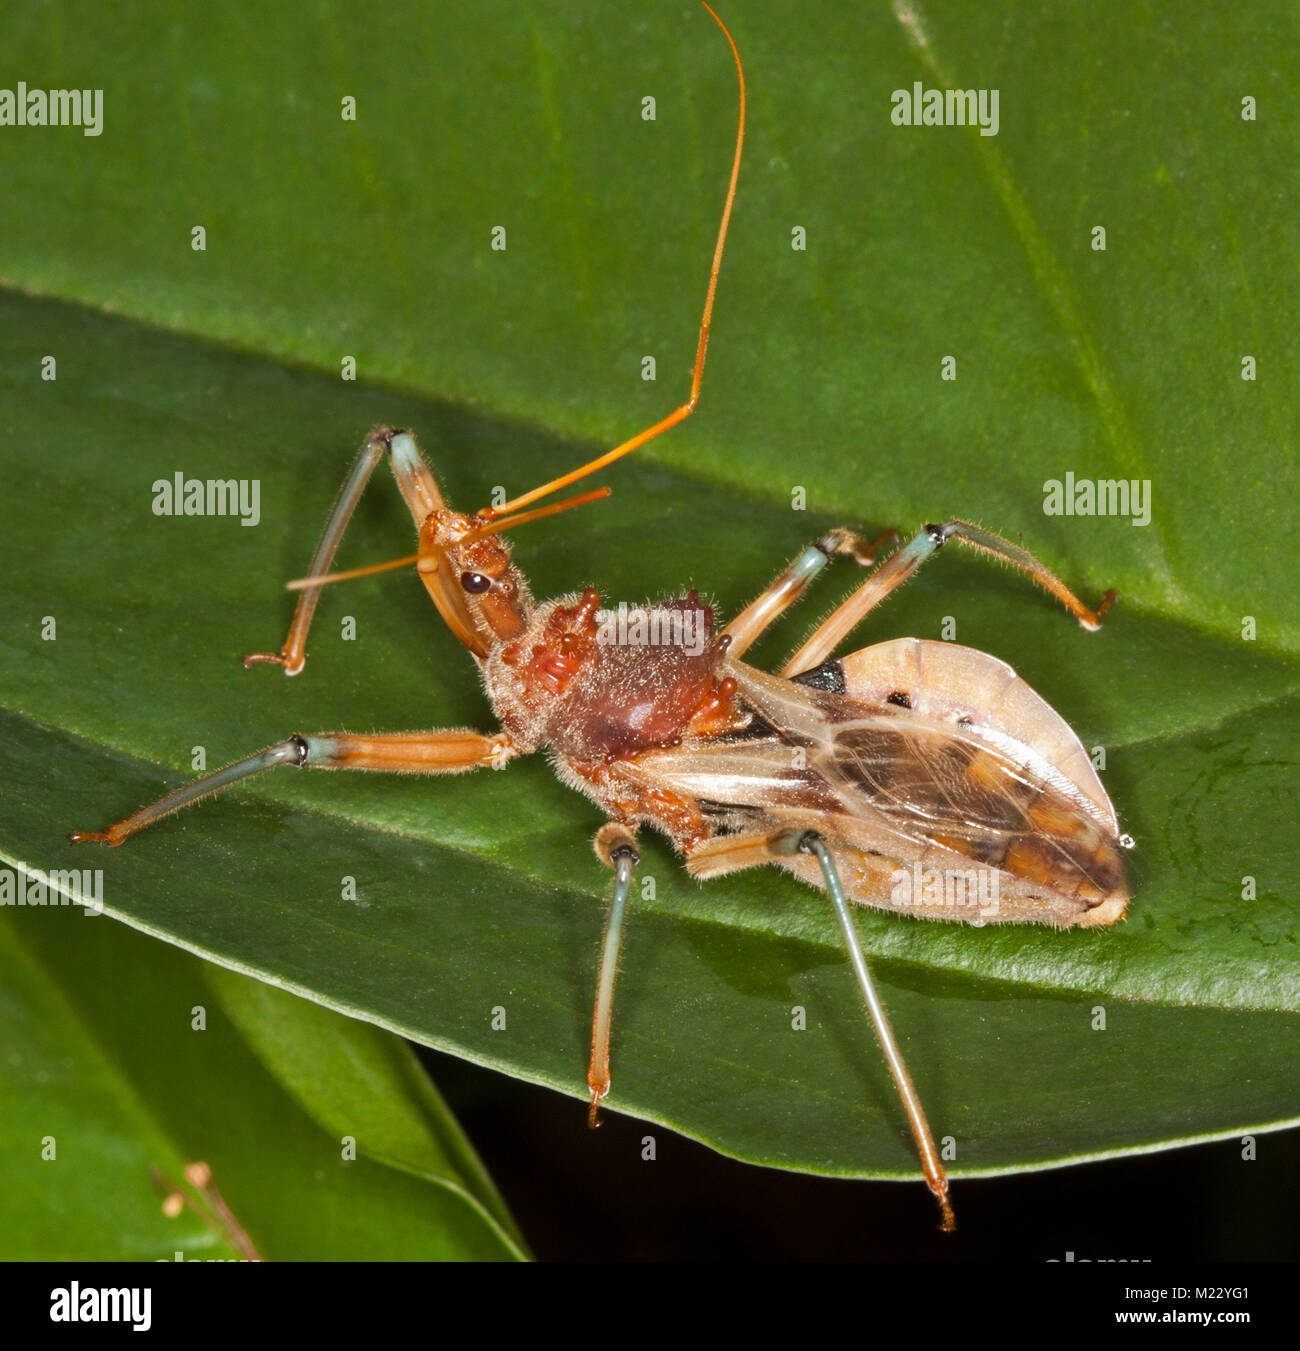 Golden brown assassin bug, Pristhecanthus plagipennis australienne, insectes prédateurs utiles sur feuille verte Banque D'Images